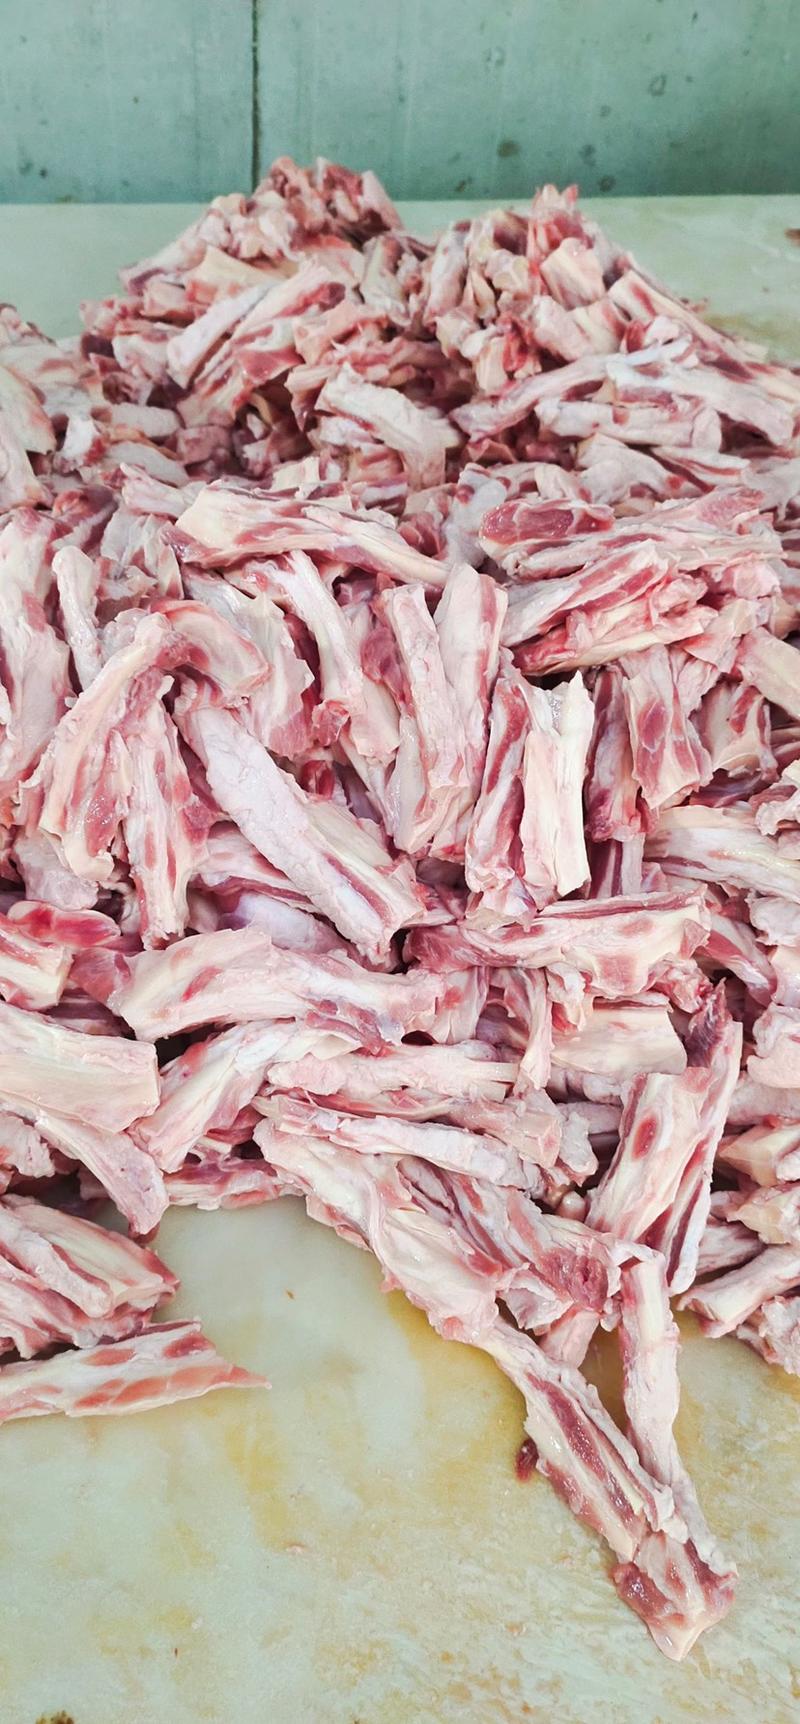 羔羊脖肉筋现货实拍含肉量高带肉羔羊肉筋